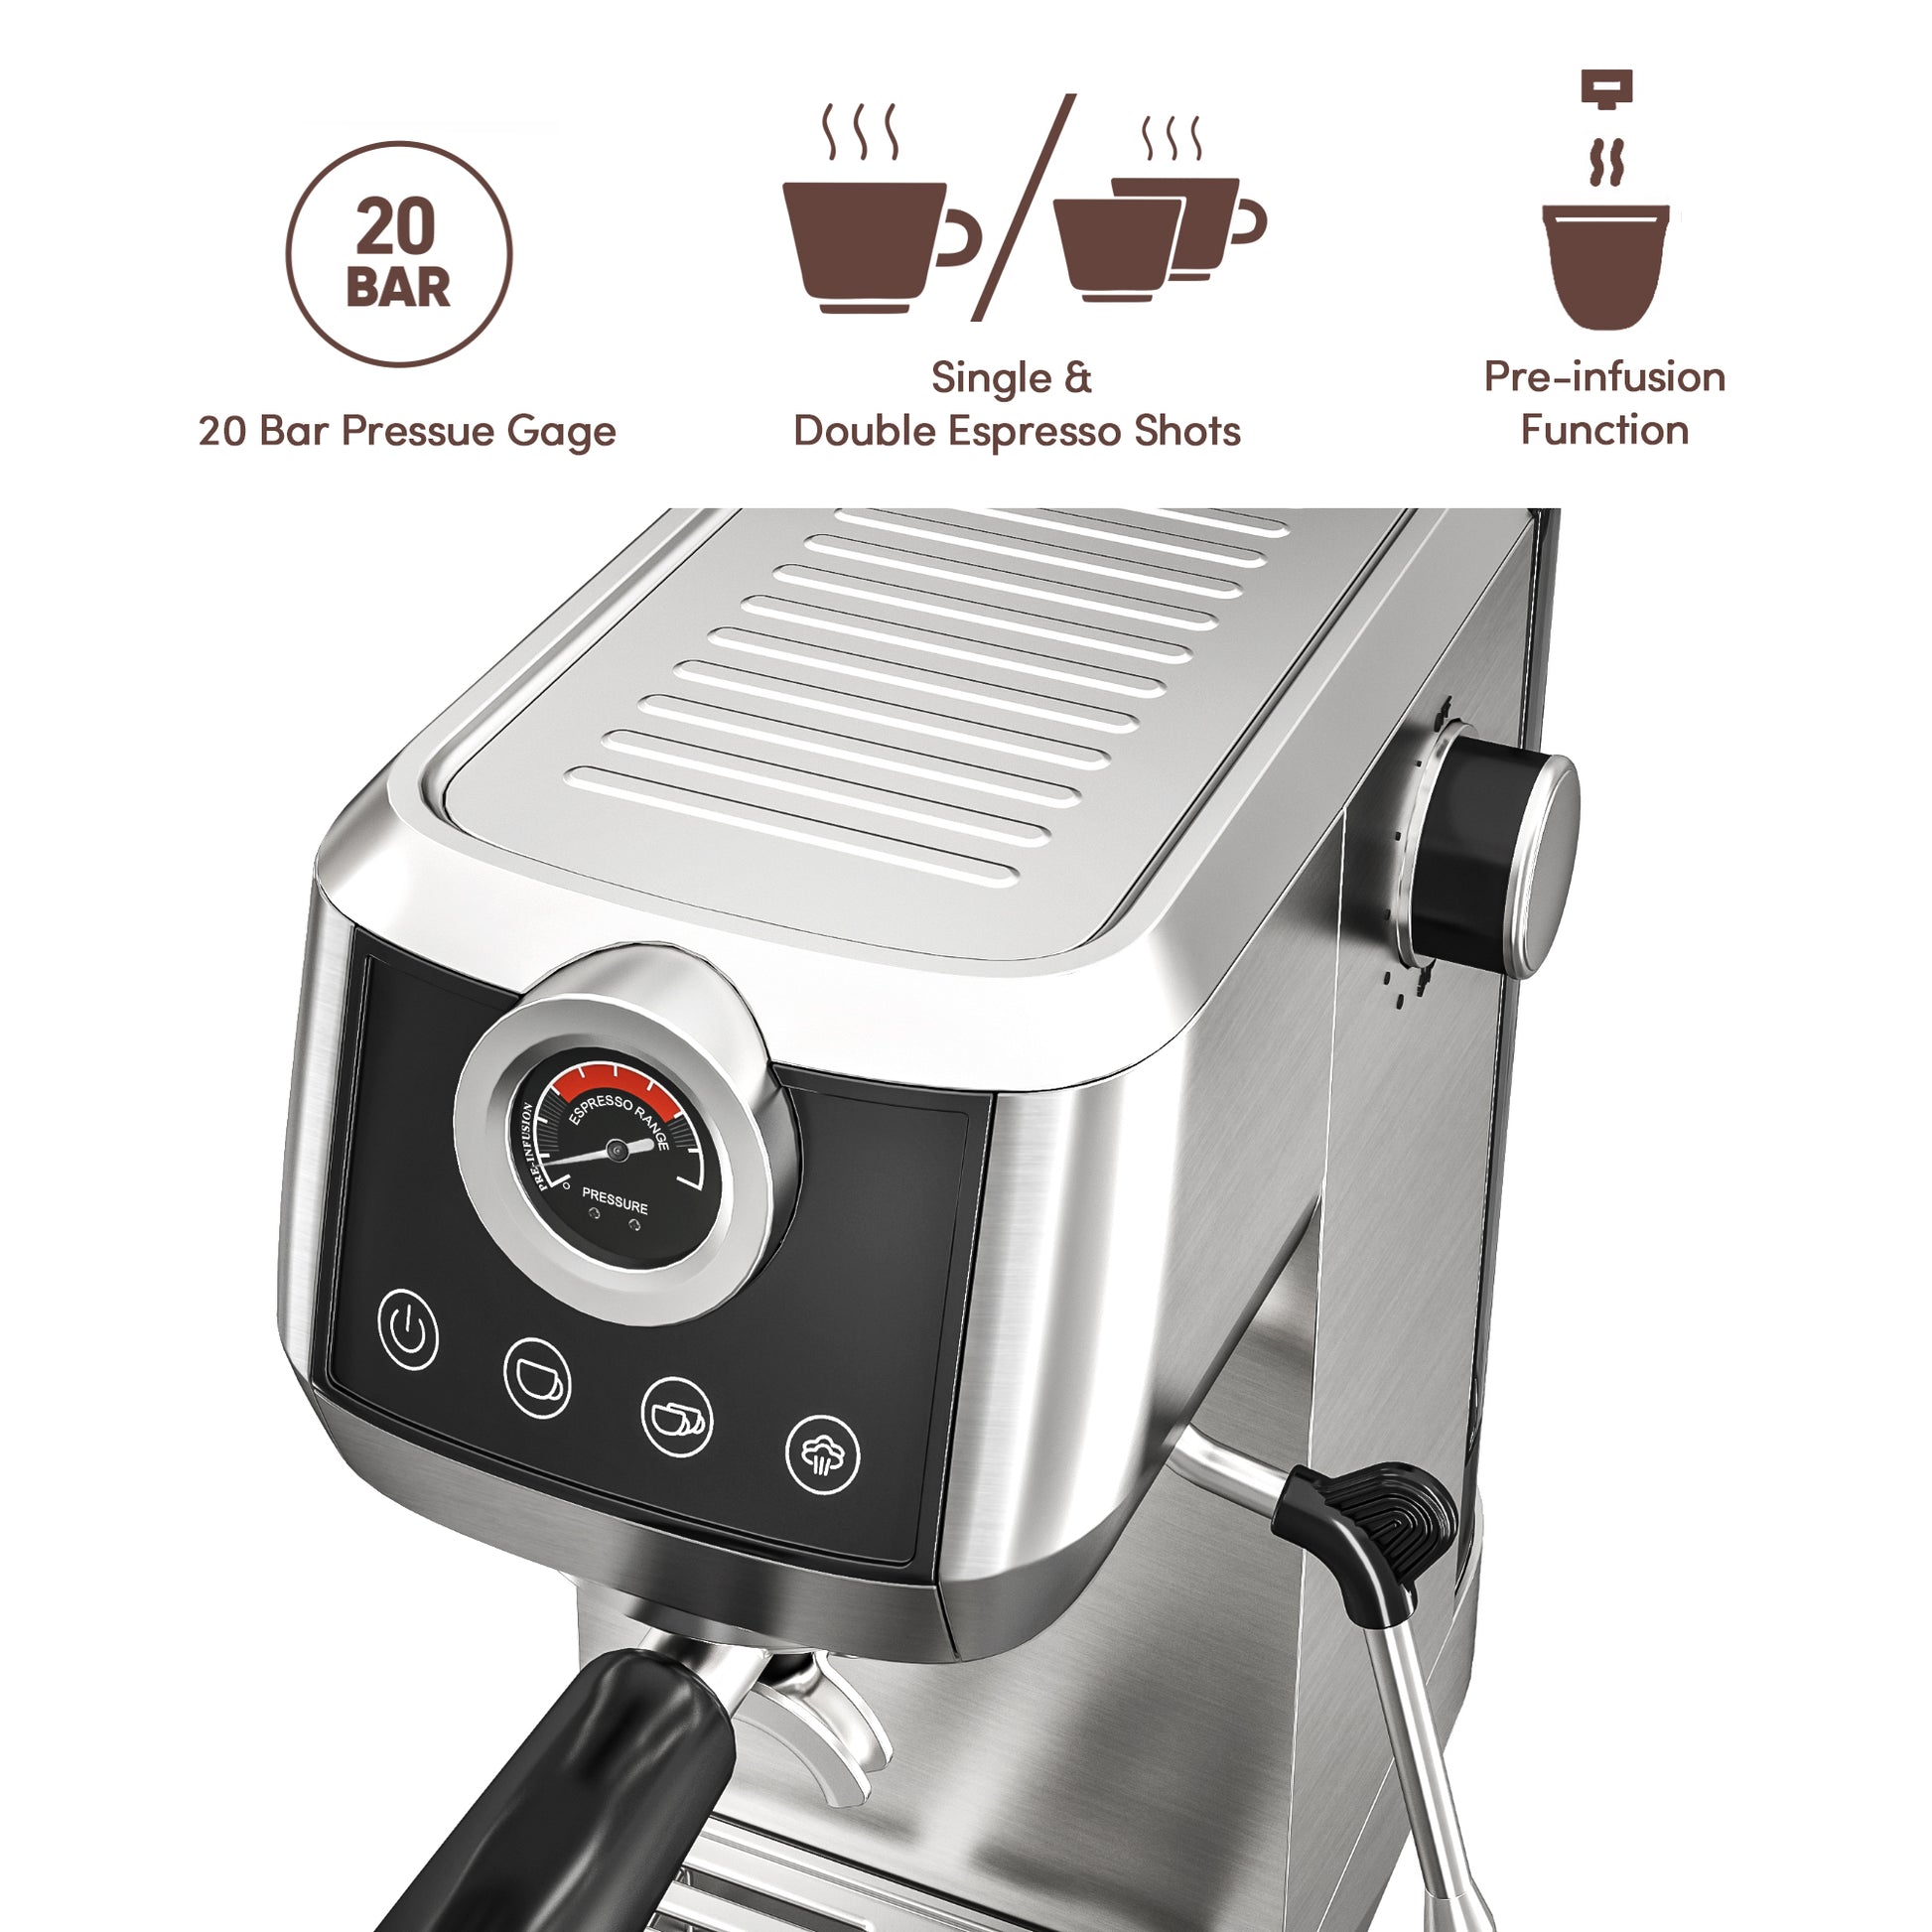 < img src="espresso machine.jpg" alt="wirsh 20bar espresso machine panel"/>